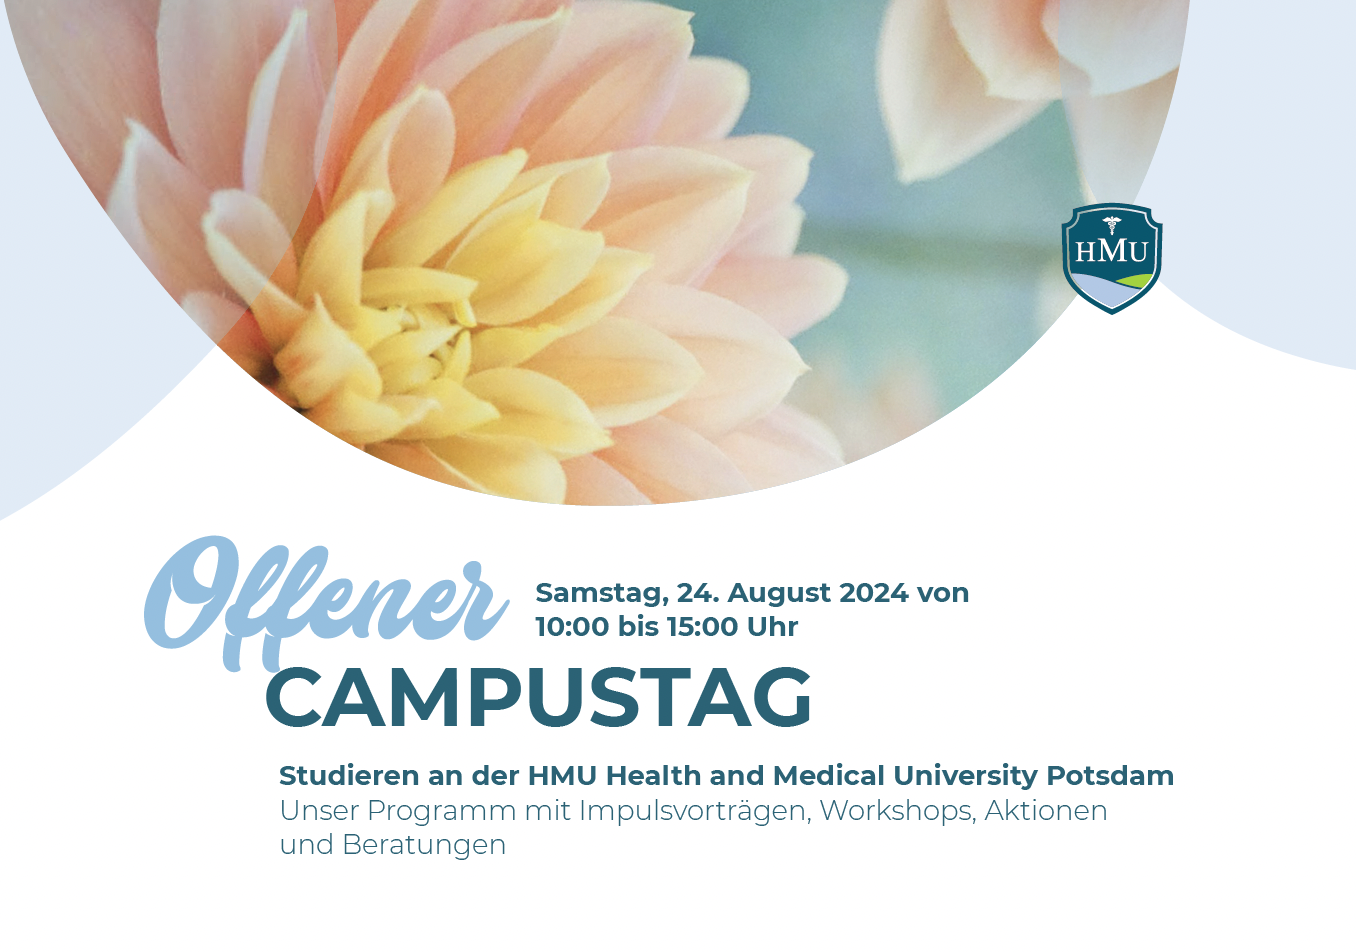 Programm Offener Campustag HMU Potsdam - 24. August 2024